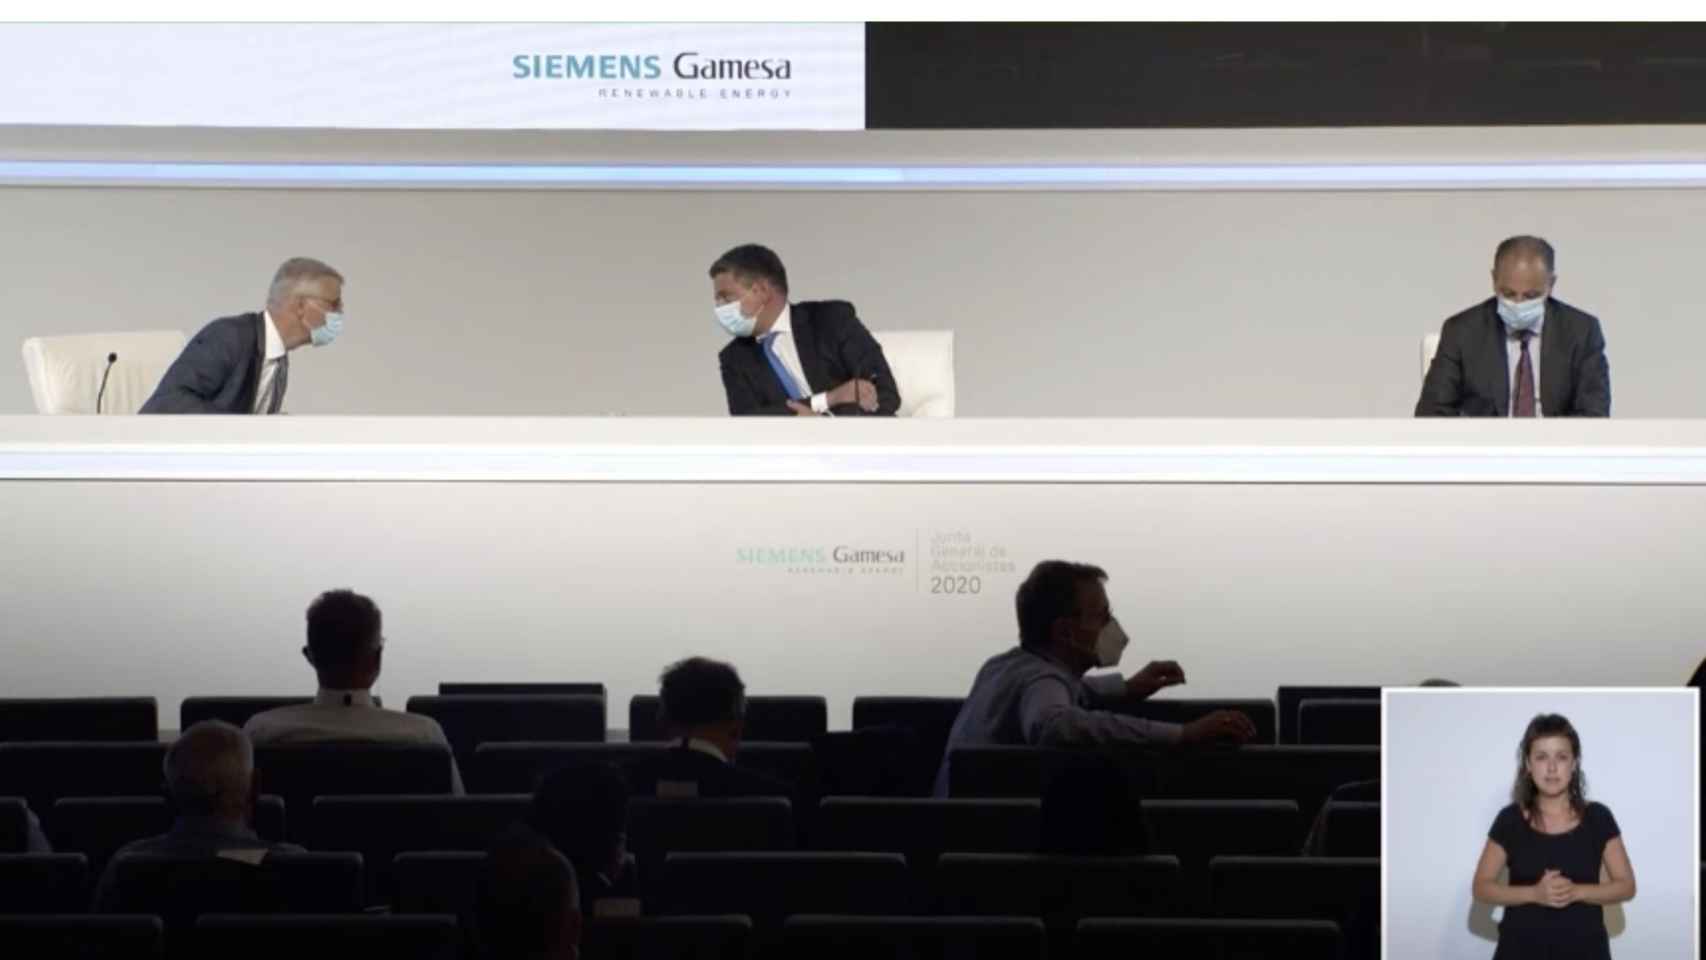 El CEO de Siemens Gamesa llama a cambiar el rumbo y poner la casa en orden para lograr el éxito